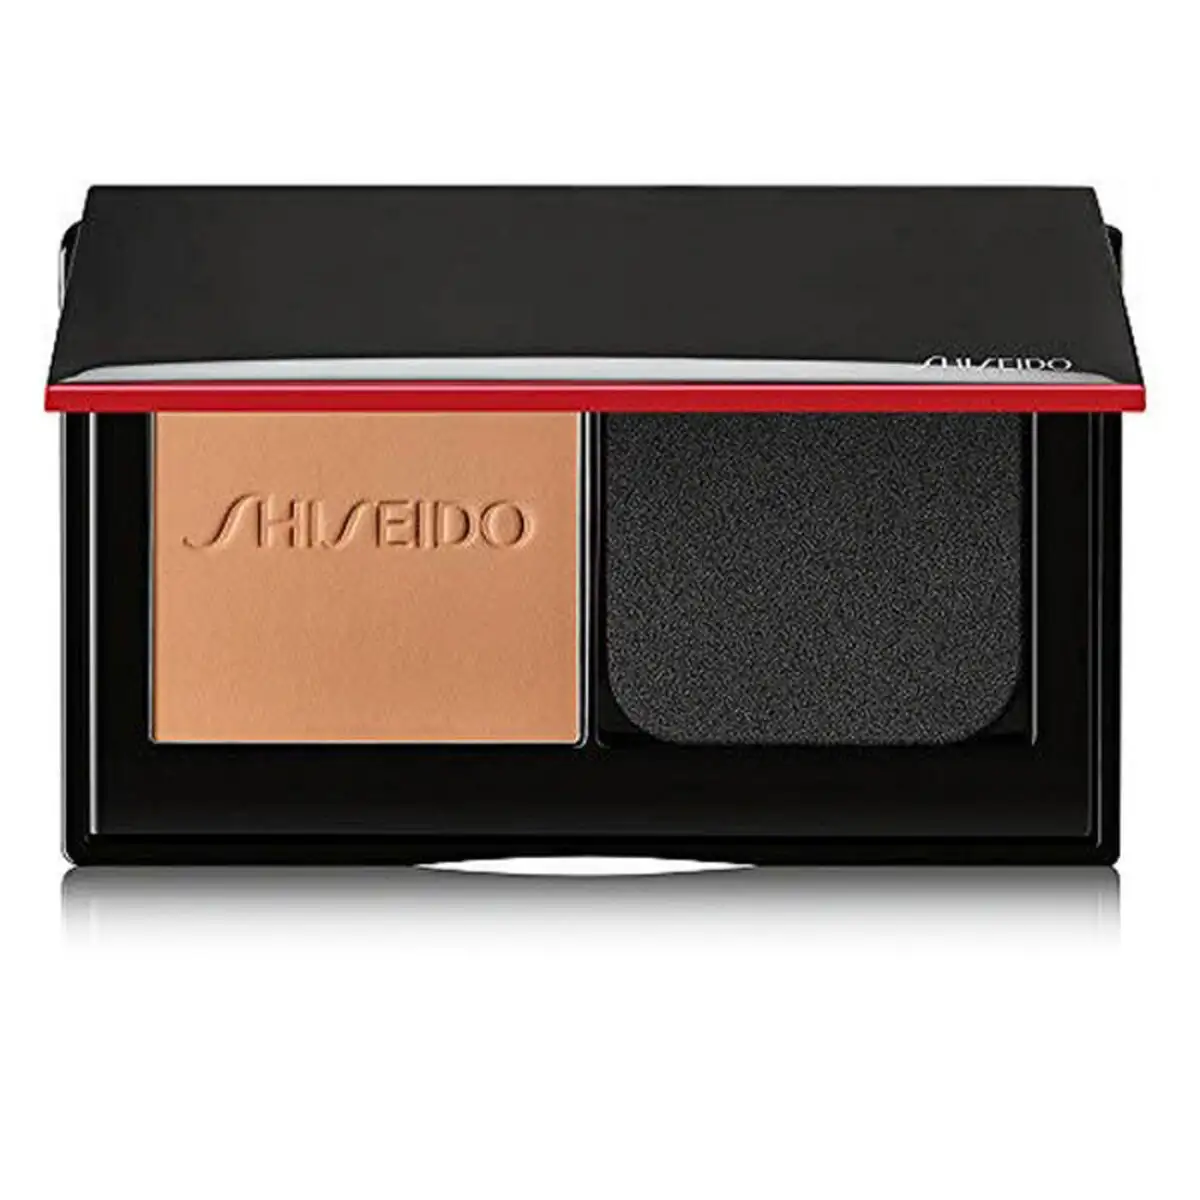 Base de maquillage en poudre shiseido 729238161207_3023. DIAYTAR SENEGAL - Où Choisir Devient une Expérience Personnalisée. Explorez notre boutique en ligne pour découvrir des produits qui s'adaptent à votre style et à votre essence.